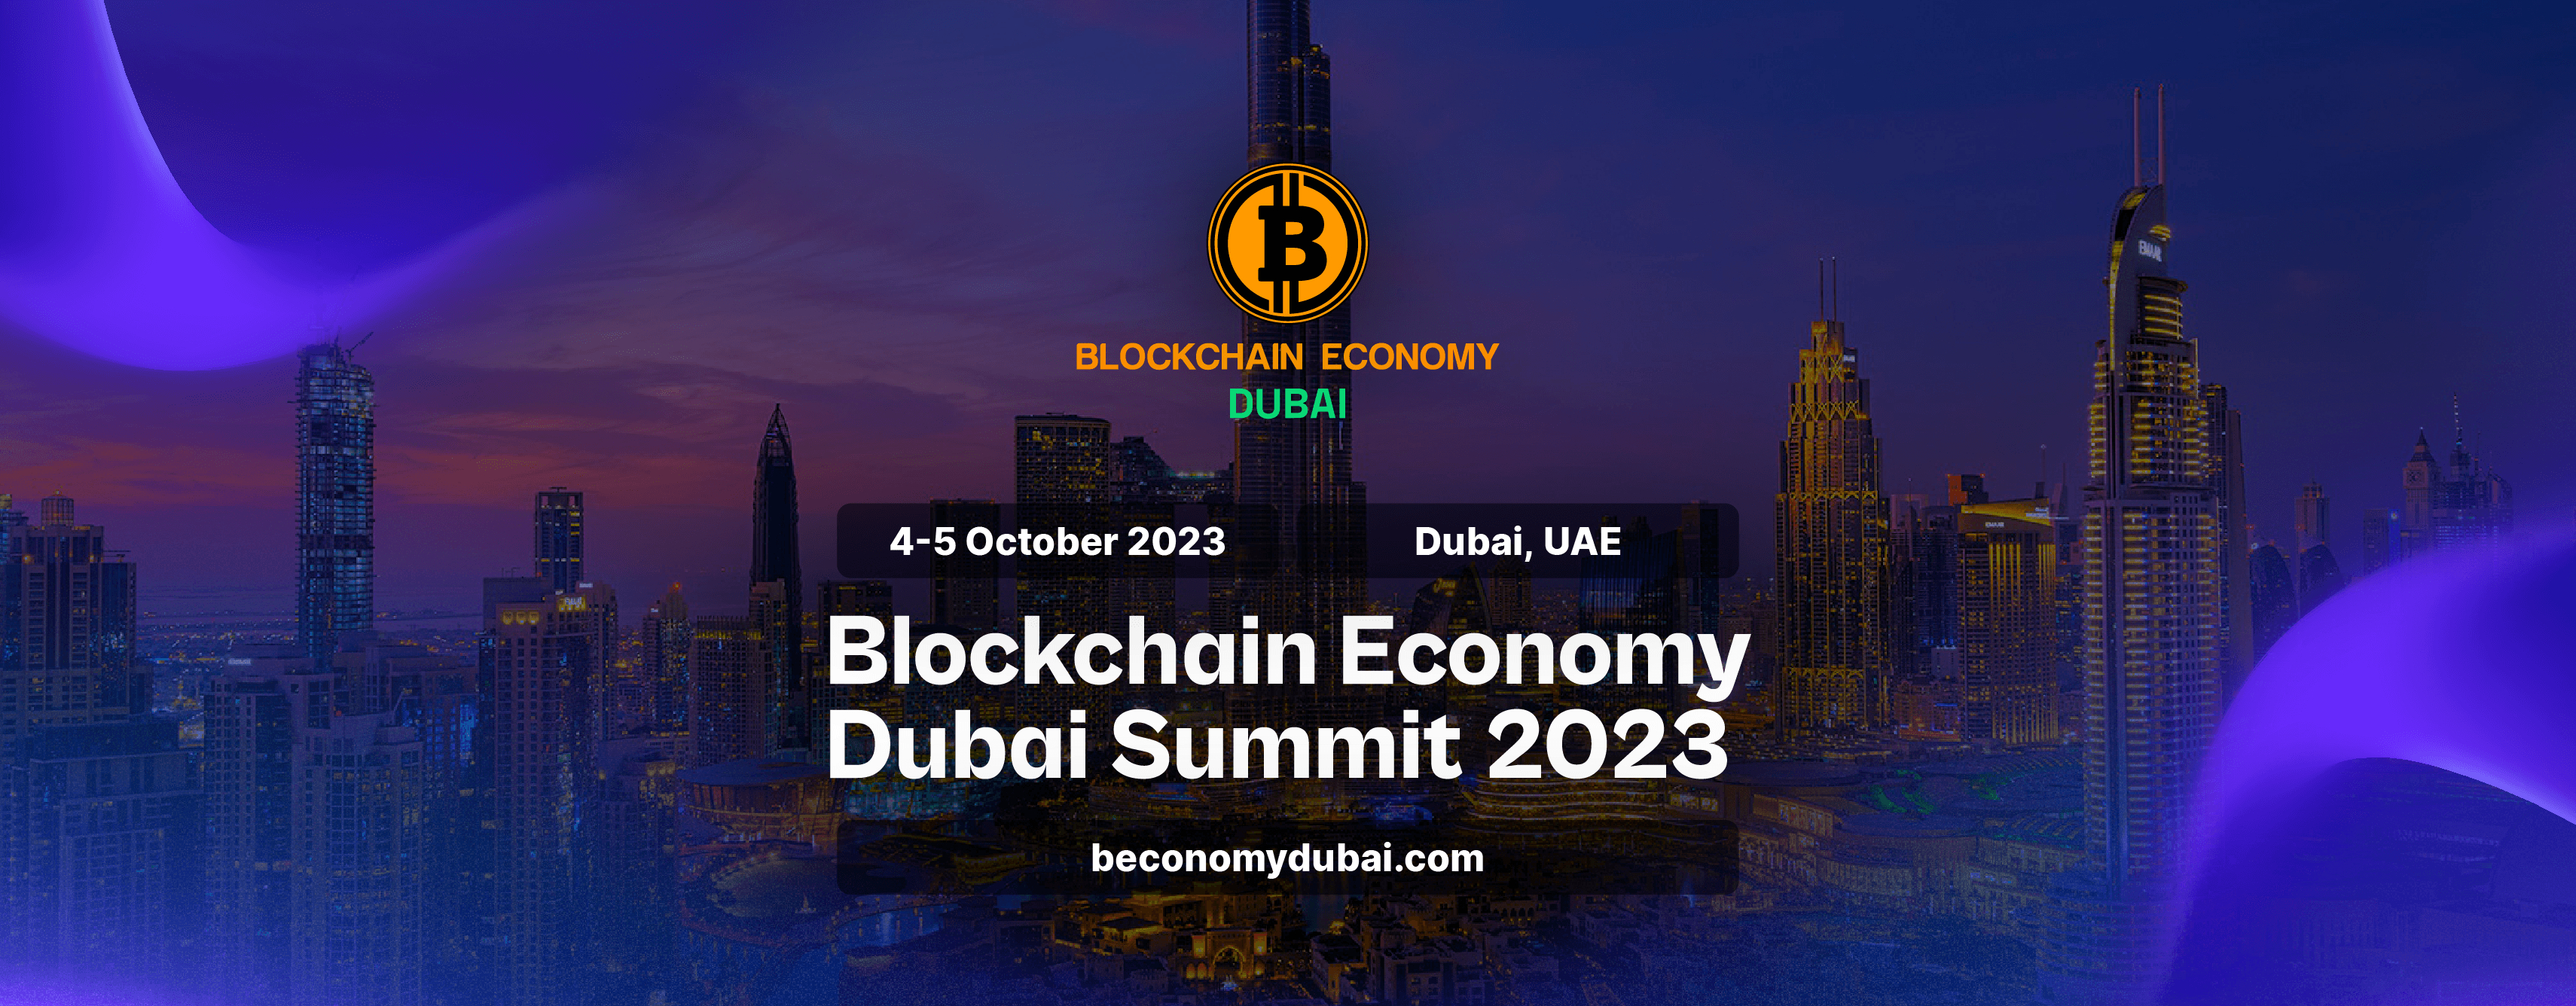 Globala Kryptovaluta-Communityt Samlas Vid Dubais Blockchain Economy Summit, Förenar Industri Ledare För Ett  Banbrytande Event Den 4-5 Oktober, 2023